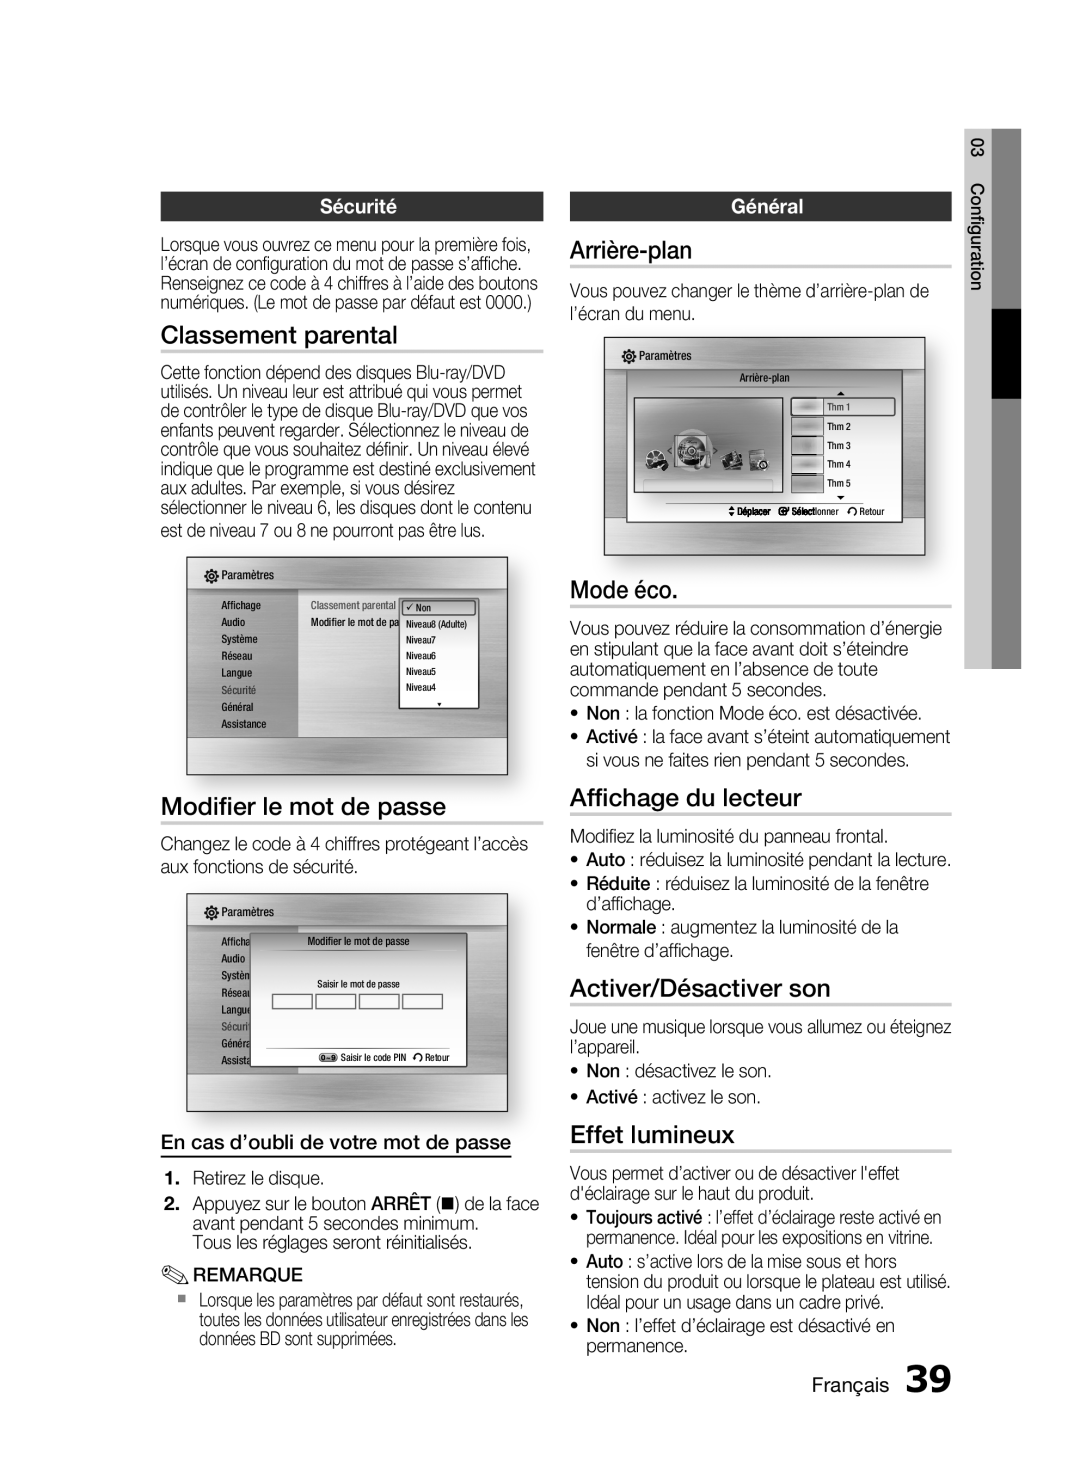 Samsung HT-C6200/XEF Classement parental, Modiﬁer le mot de passe, Arrière-plan, Mode éco, Afﬁchage du lecteur, Sécurité 